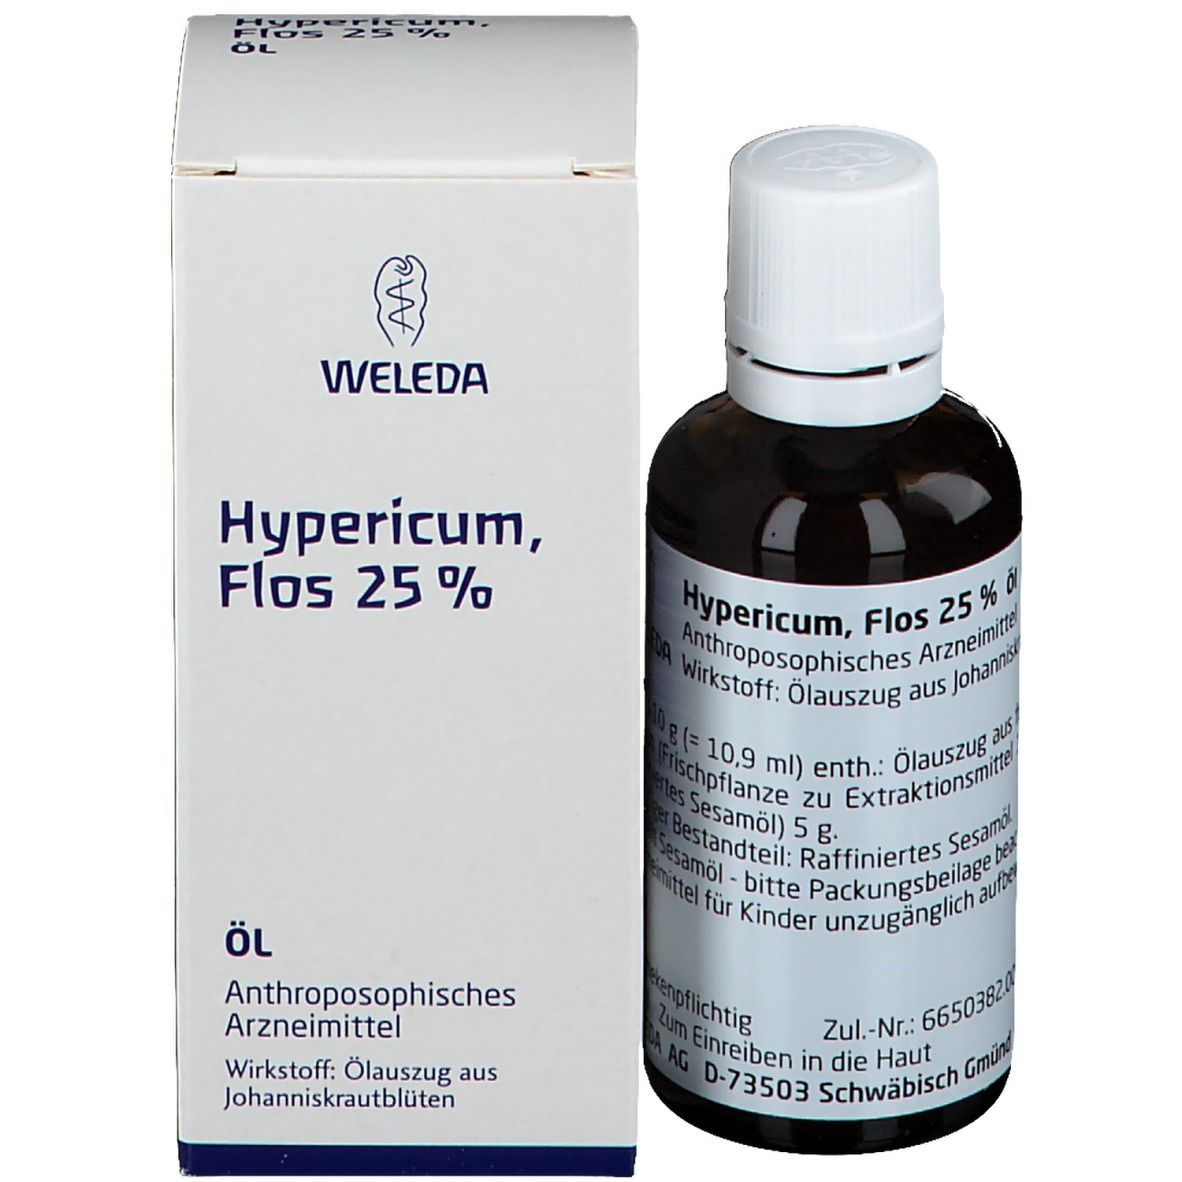 Hypericum Flos 25 %